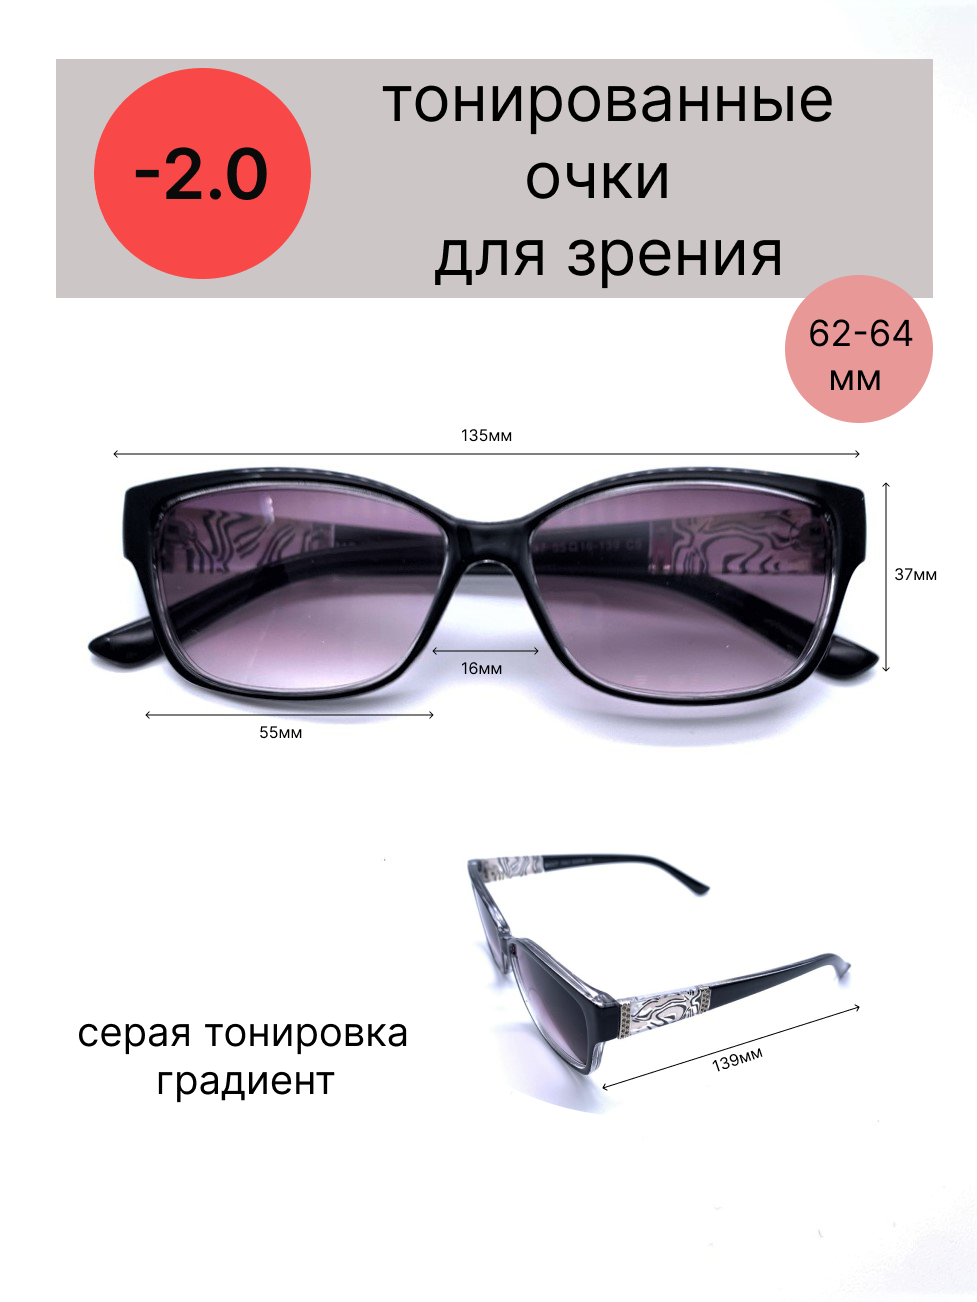 Тонированные очки с диоптриями -2.0